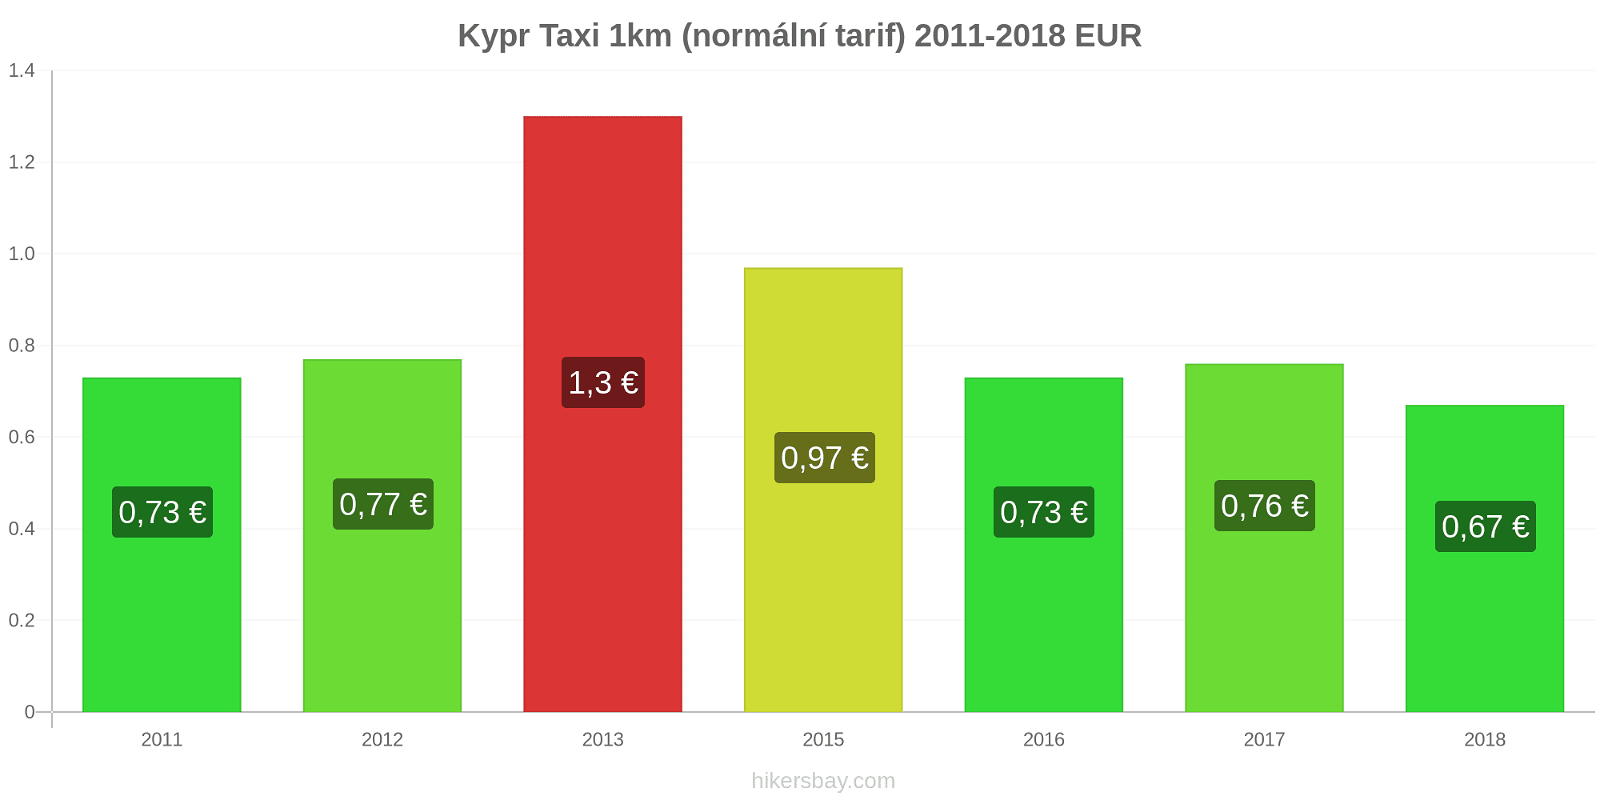 Kypr změny cen Taxi 1km (normální tarif) hikersbay.com